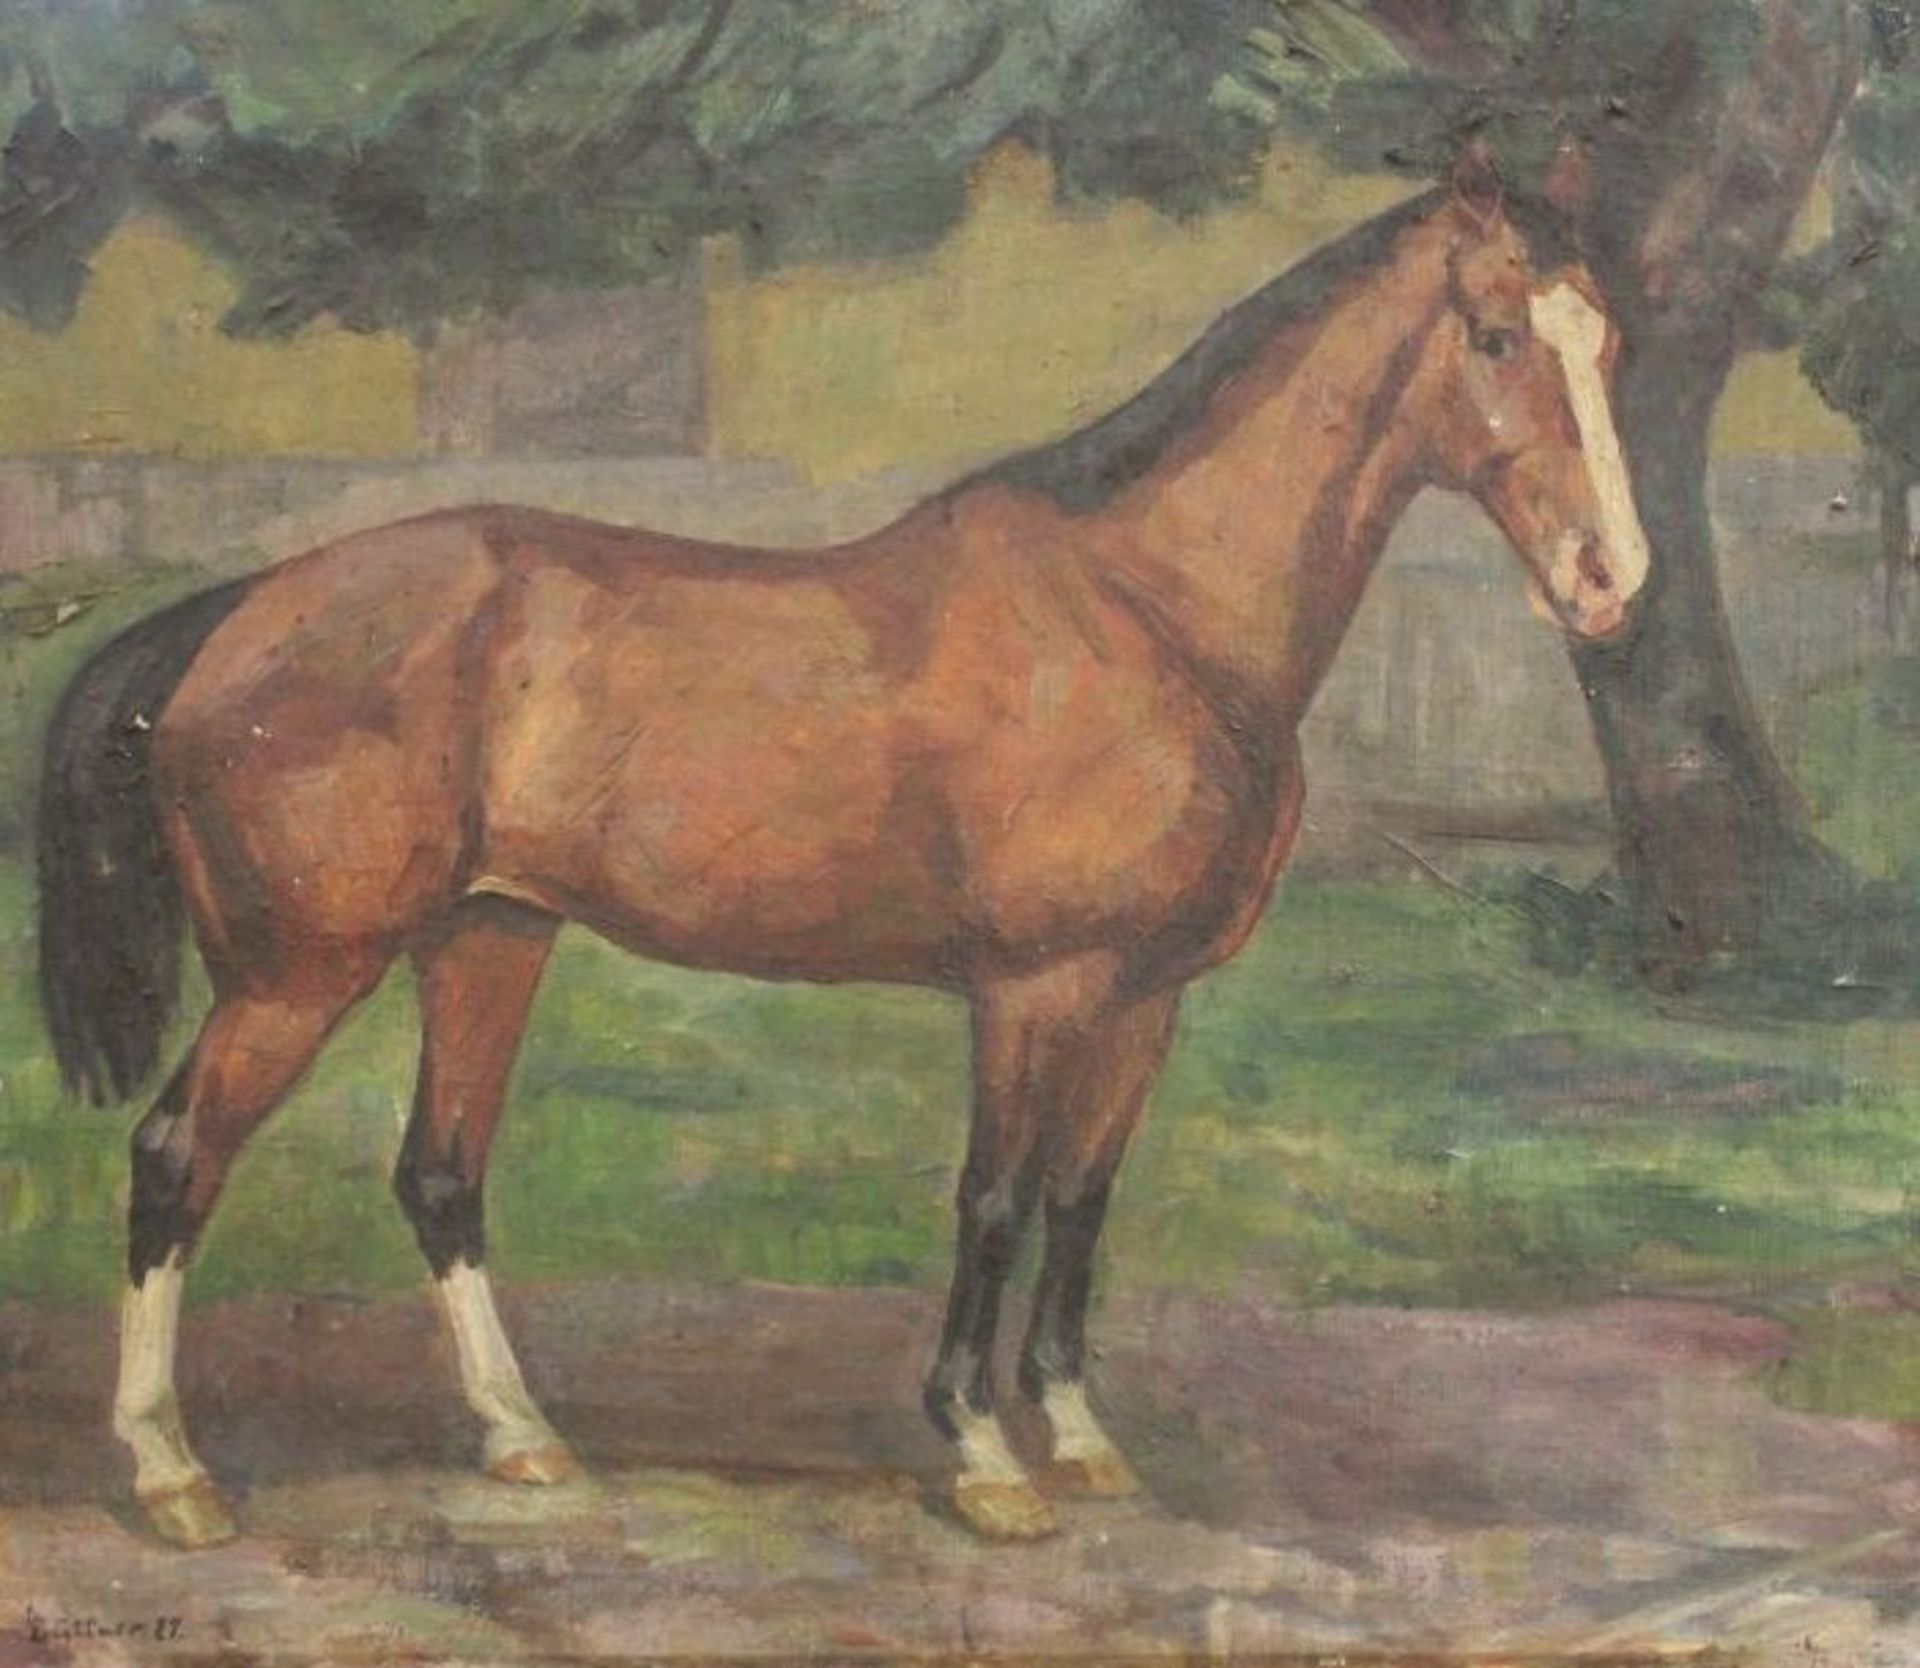 Büttner '27 "Pferdeportrait", Öl/Leinwand, ungerahmt, leicht restaurierungs bedürftig, 58 x 67c